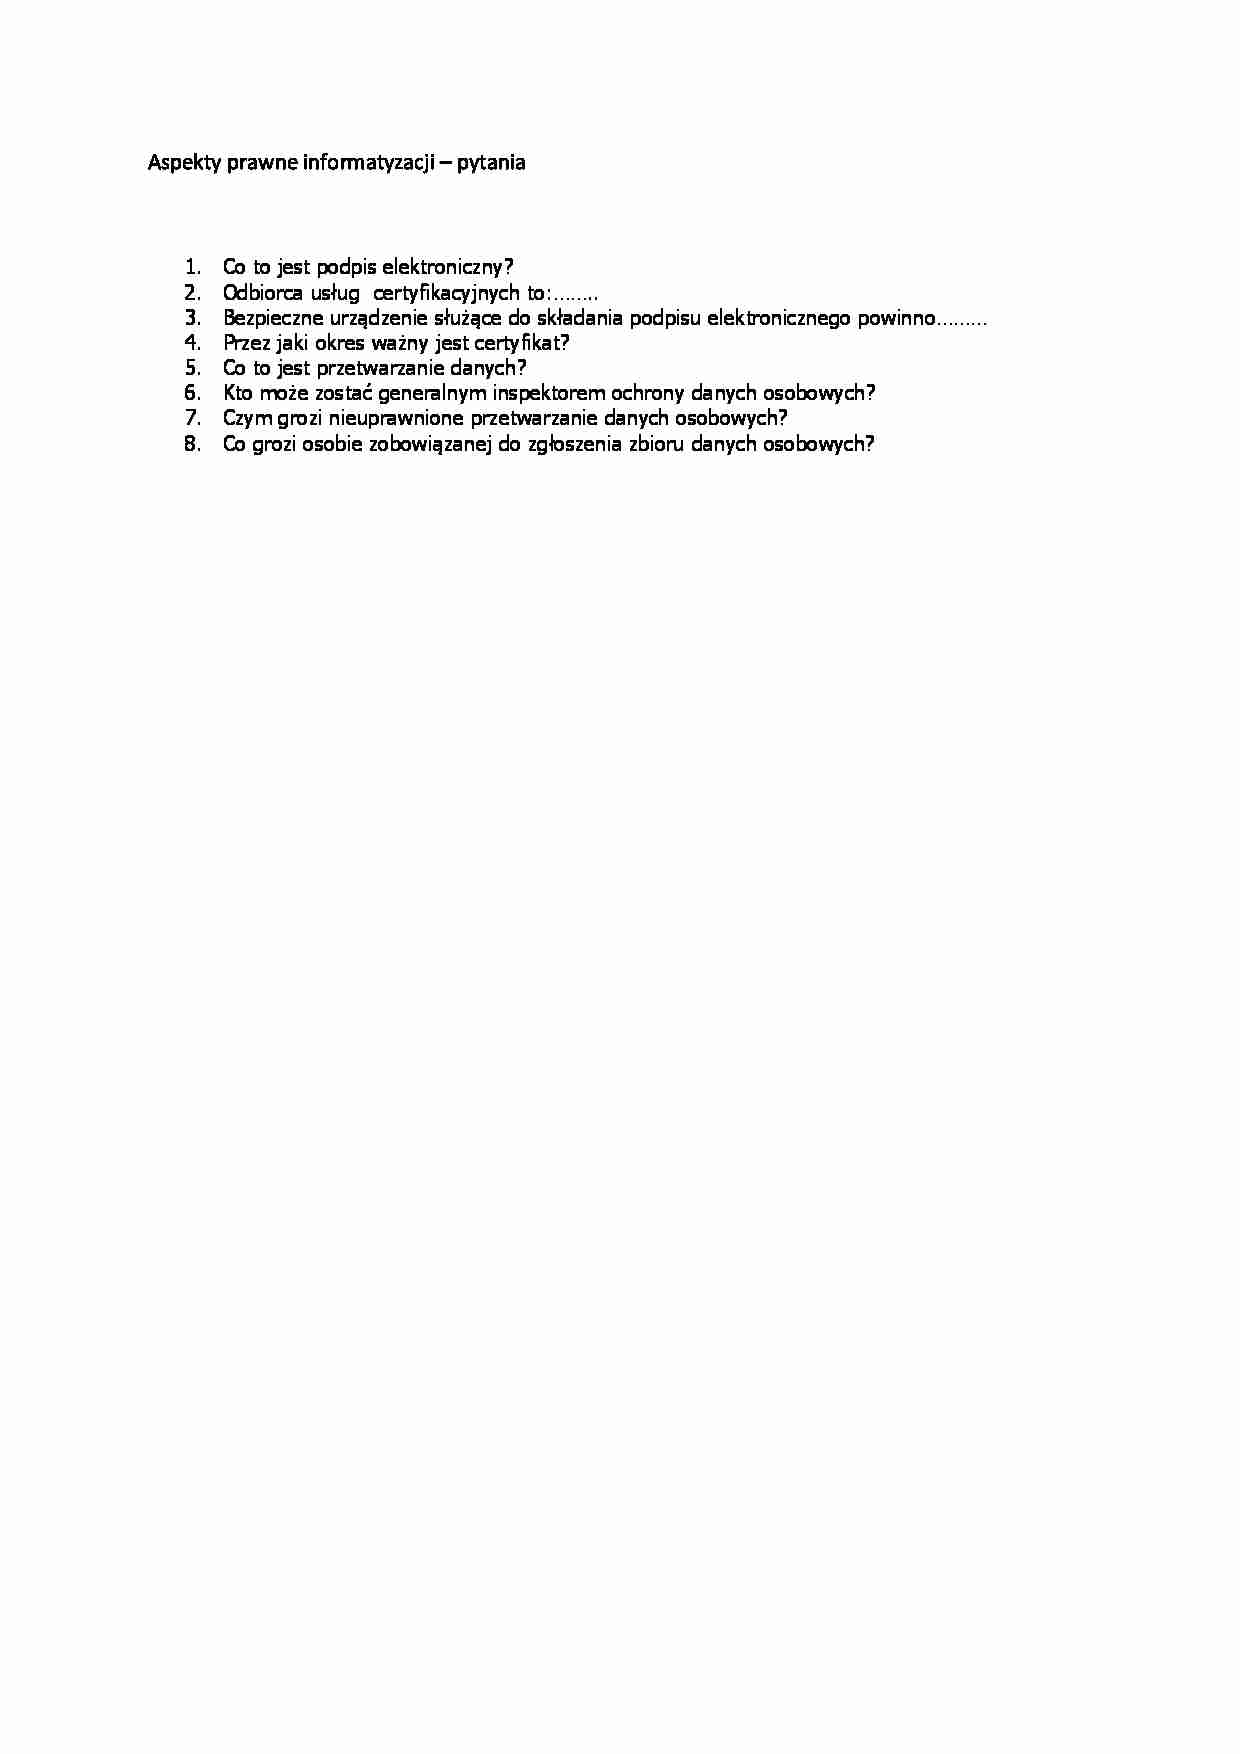 Aspekty prawne informatyzacji -przykładowe pytania (sem.VI) - strona 1